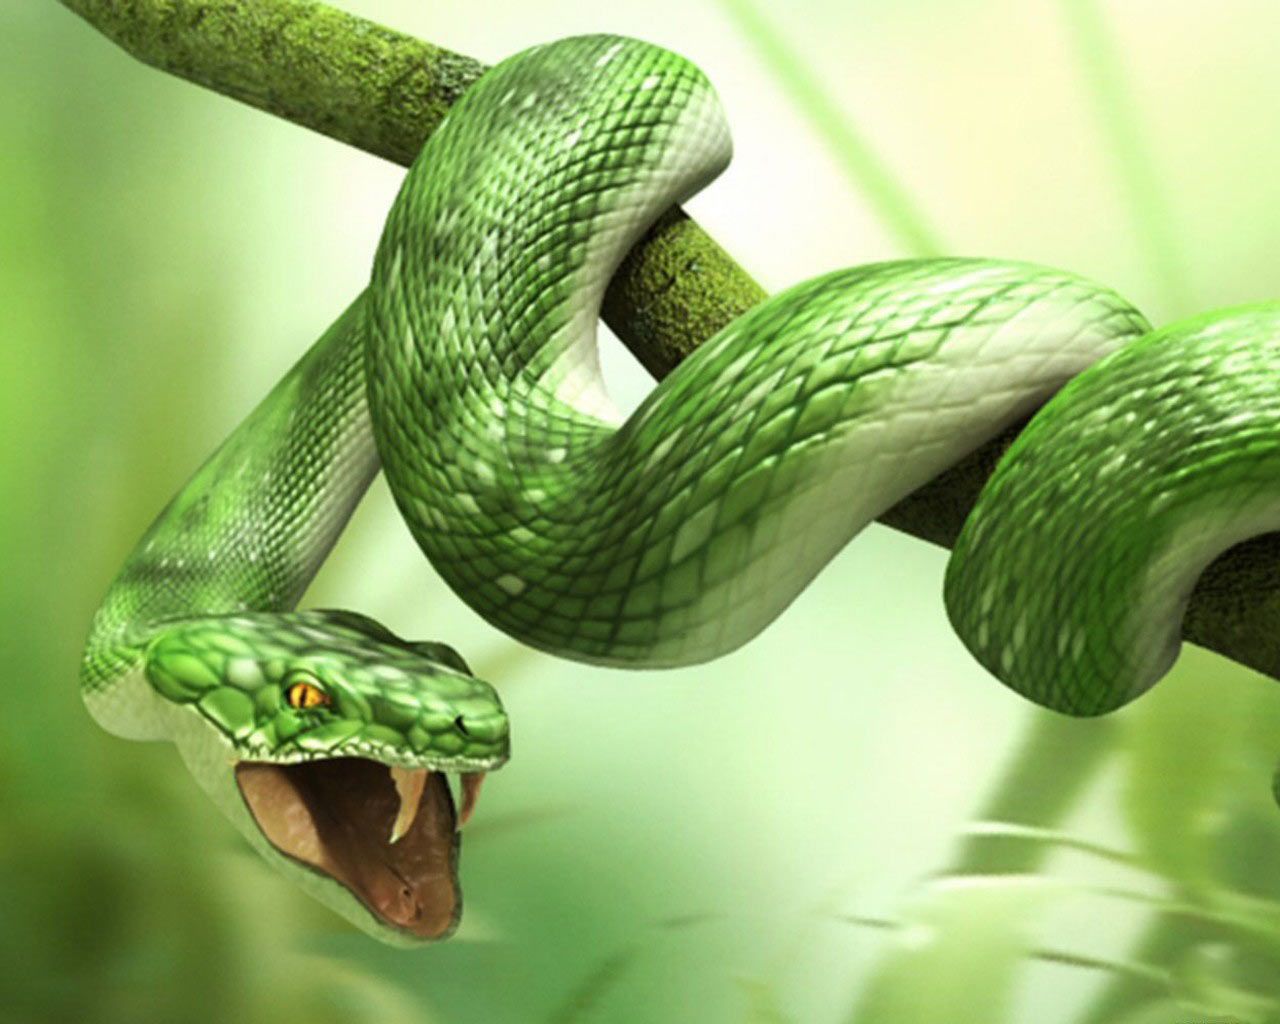 3D Wallpaper Green Snake Live Wallpaper HD. Snake wallpaper, Green snake, Snake